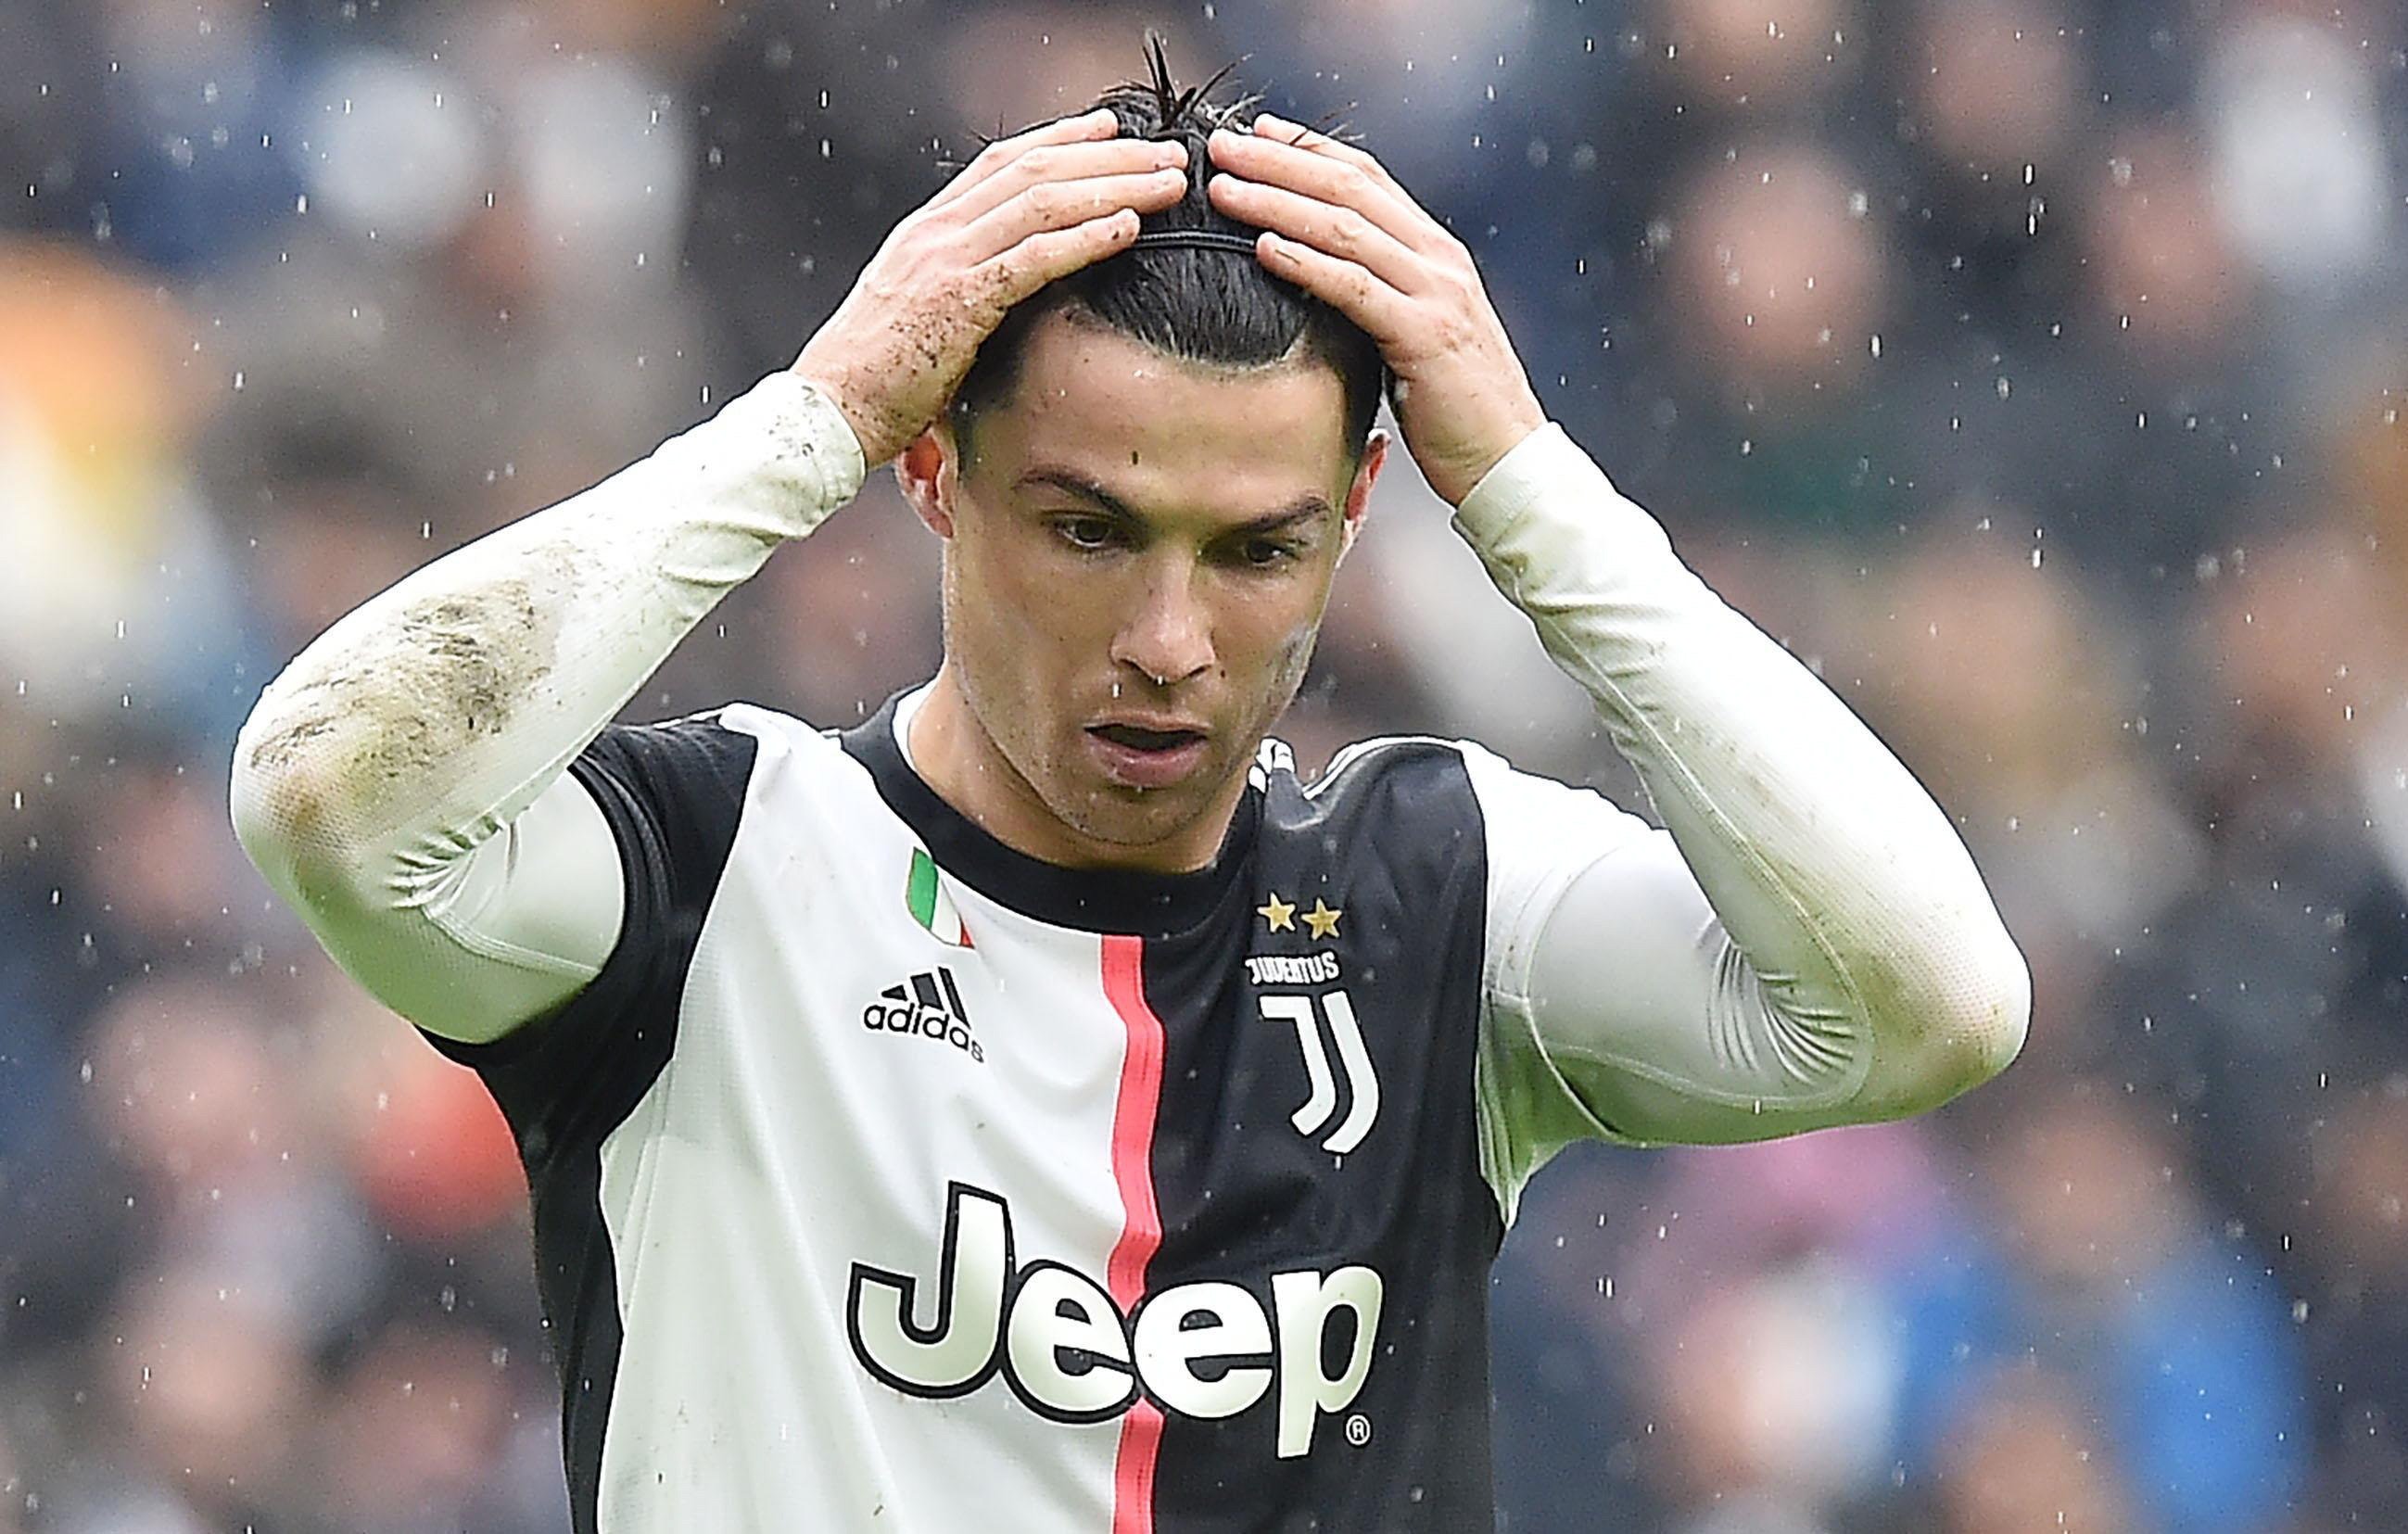 Problema mayúsculo en Italia: 8 clubs no quieren acabar la Serie A